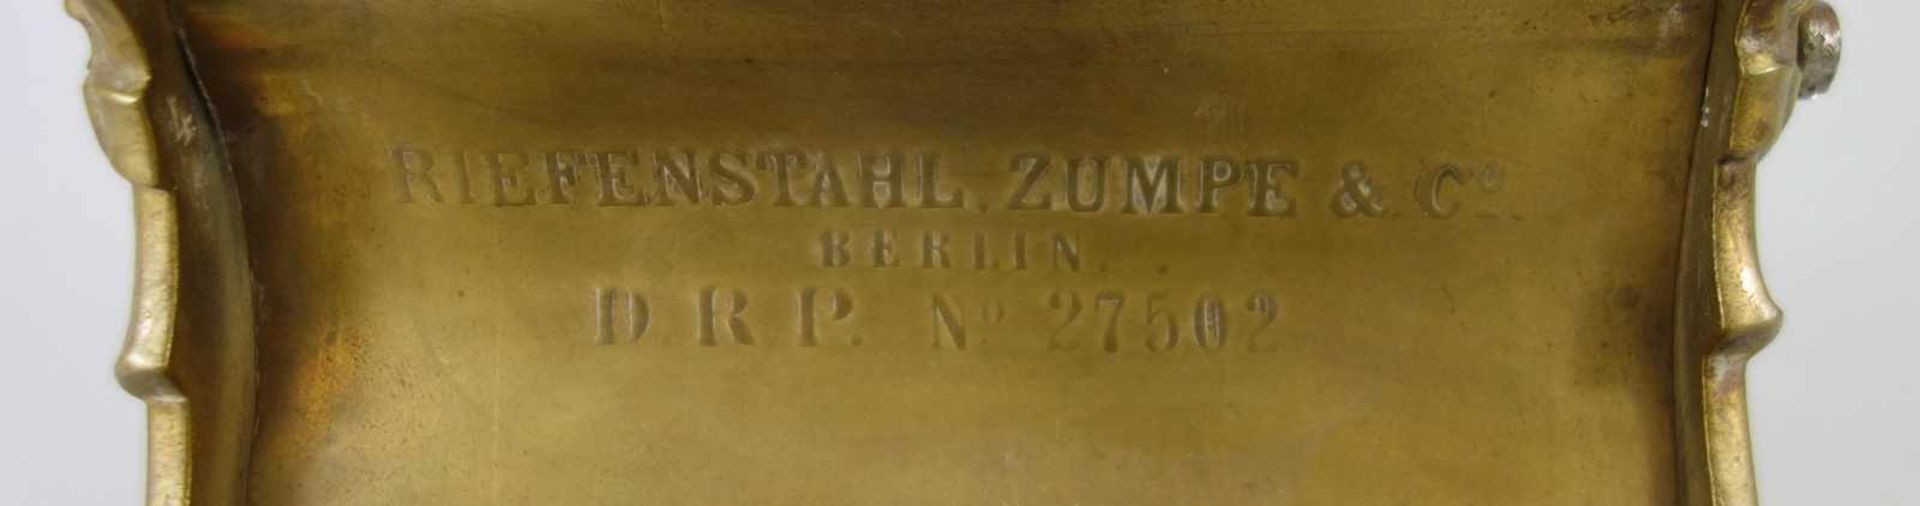 Schreibtischgarnitur, Riefenstahl, Zumpe & Co, Berlin, um 1884, D.R.P. Nr.27502, Messing, - Bild 3 aus 3